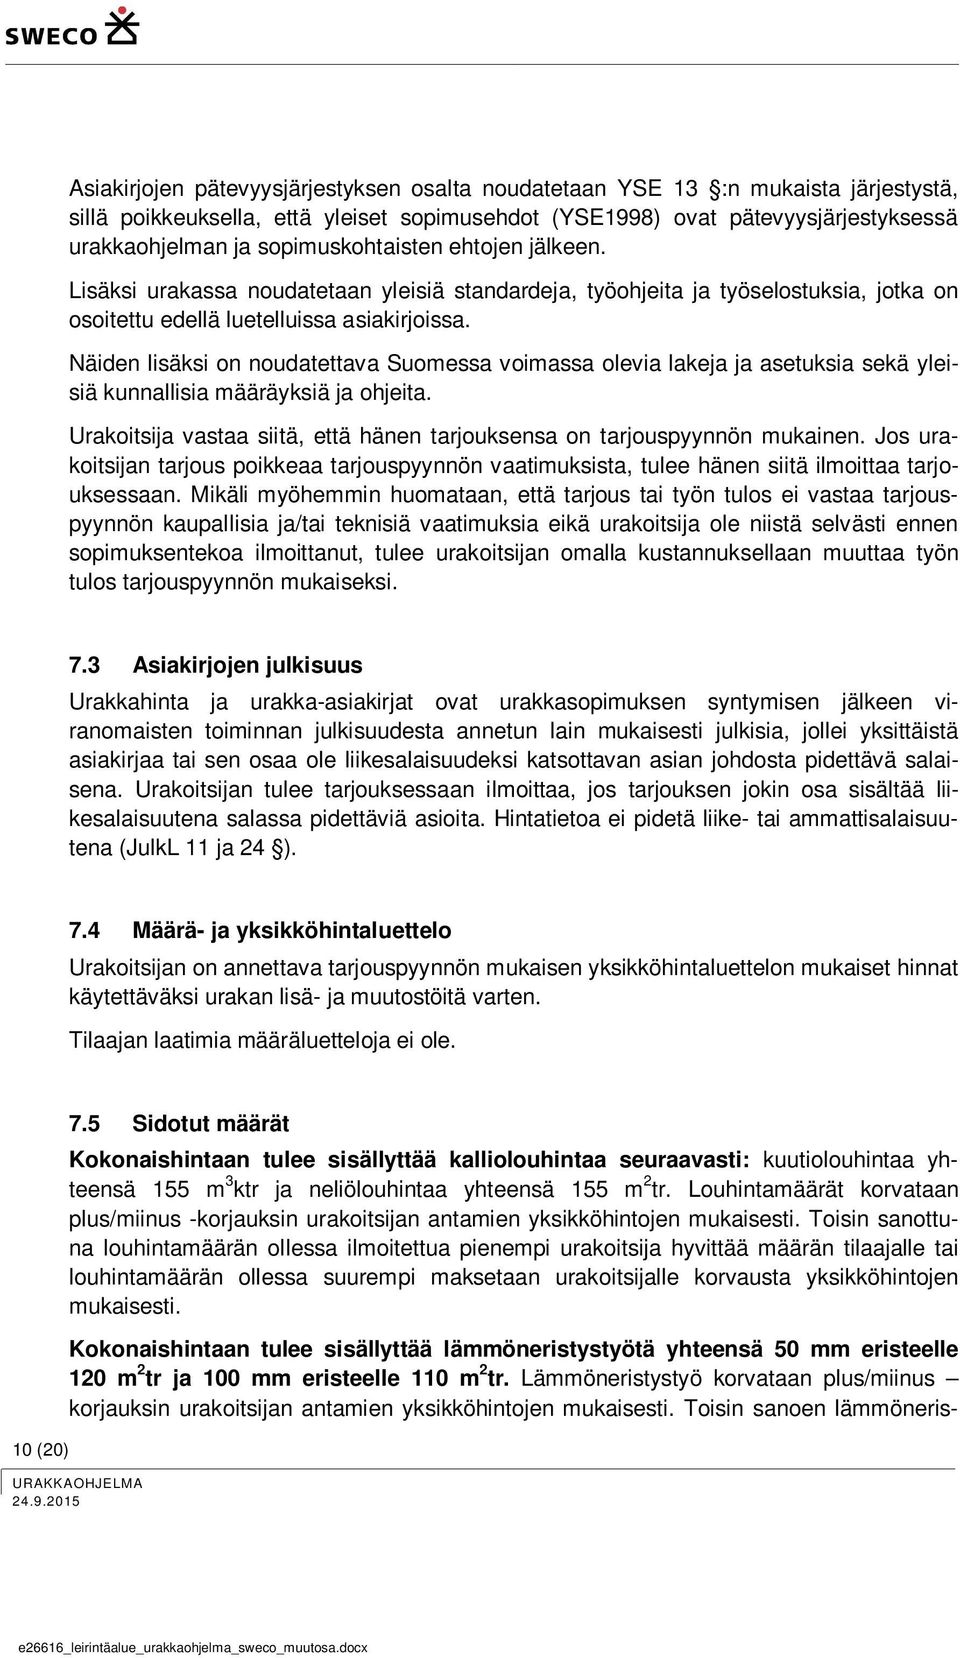 Näiden lisäksi on noudatettava Suomessa voimassa olevia lakeja ja asetuksia sekä yleisiä kunnallisia määräyksiä ja ohjeita.